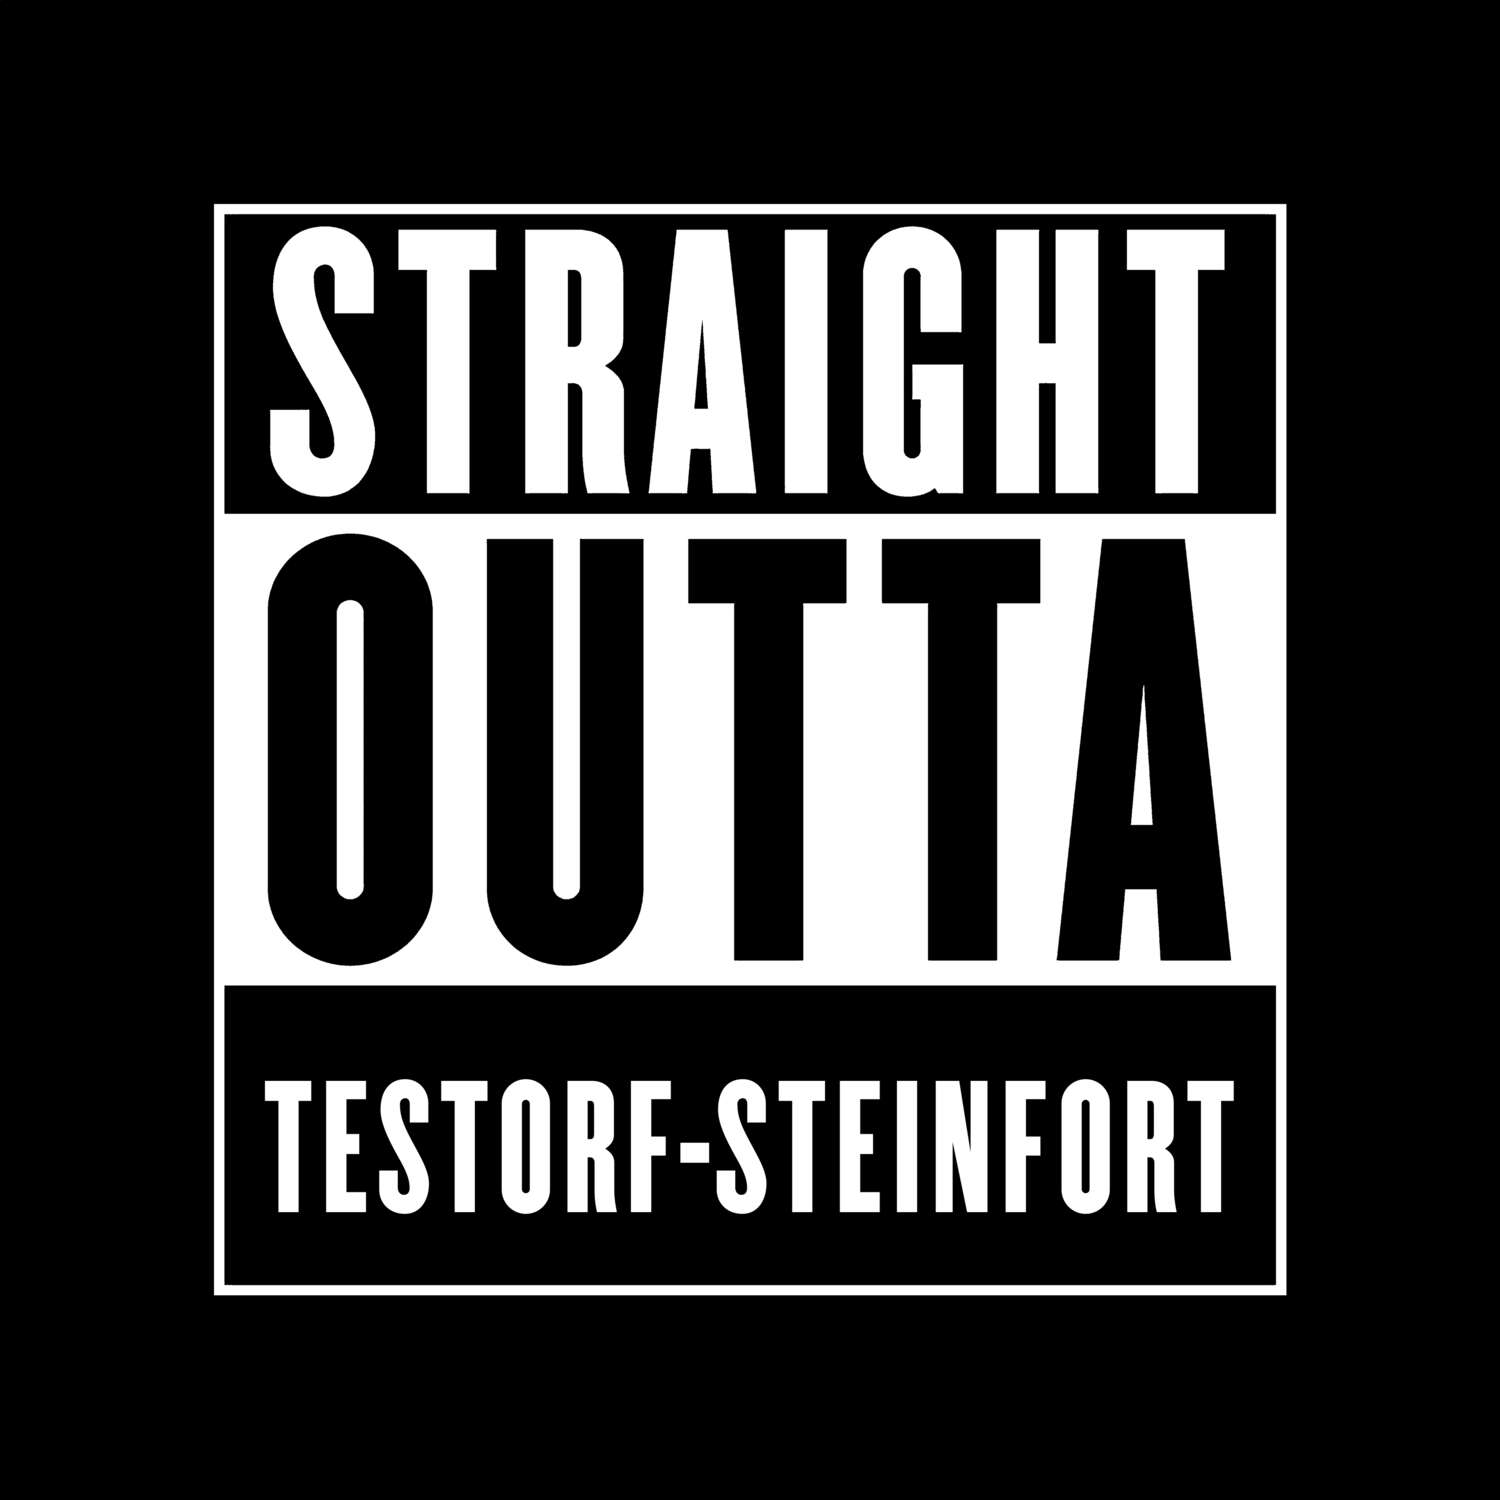 Testorf-Steinfort T-Shirt »Straight Outta«